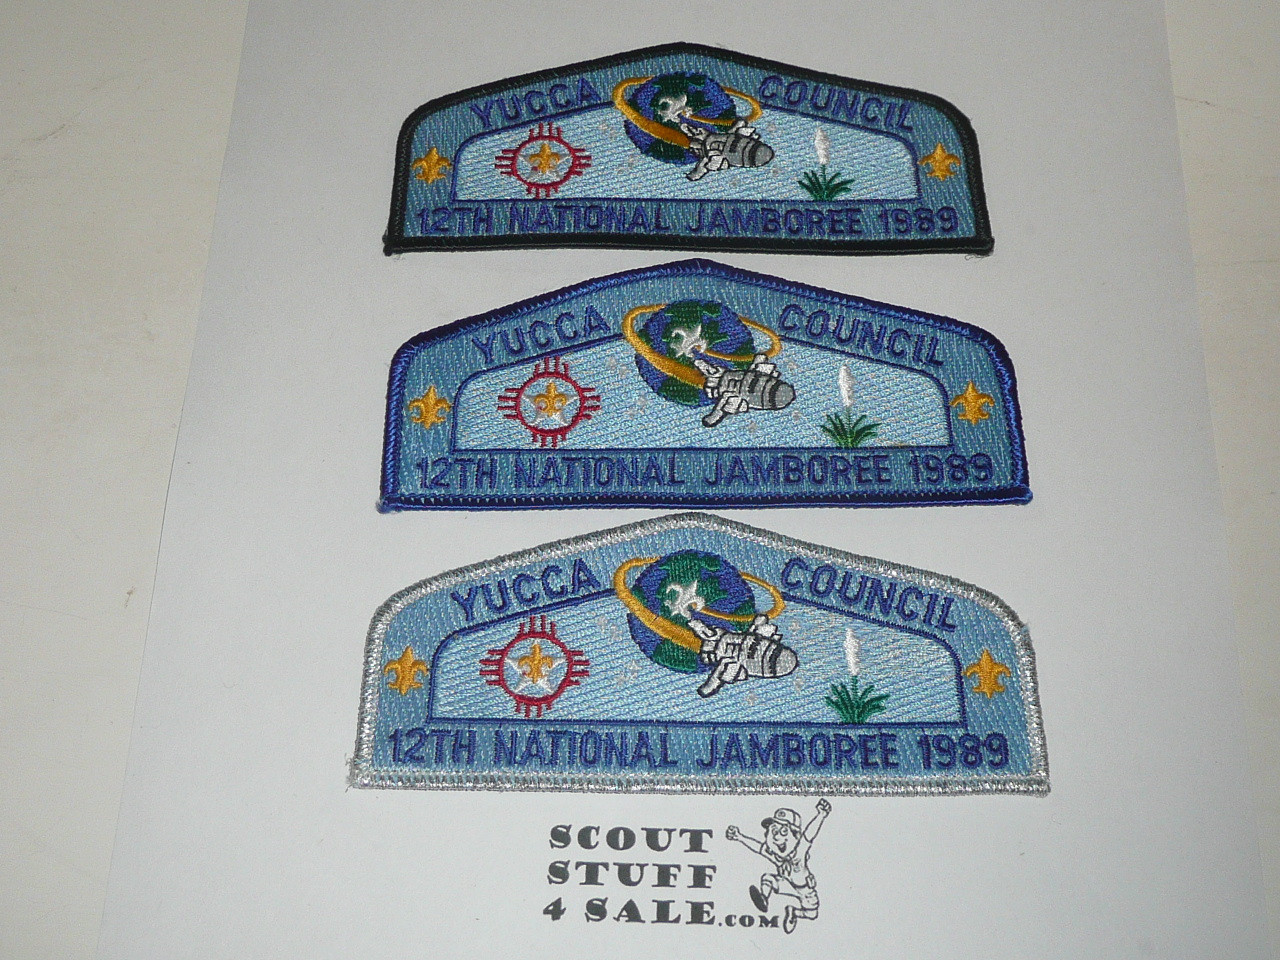 1989 National Jamboree JSP - Yucca Council, set of 3